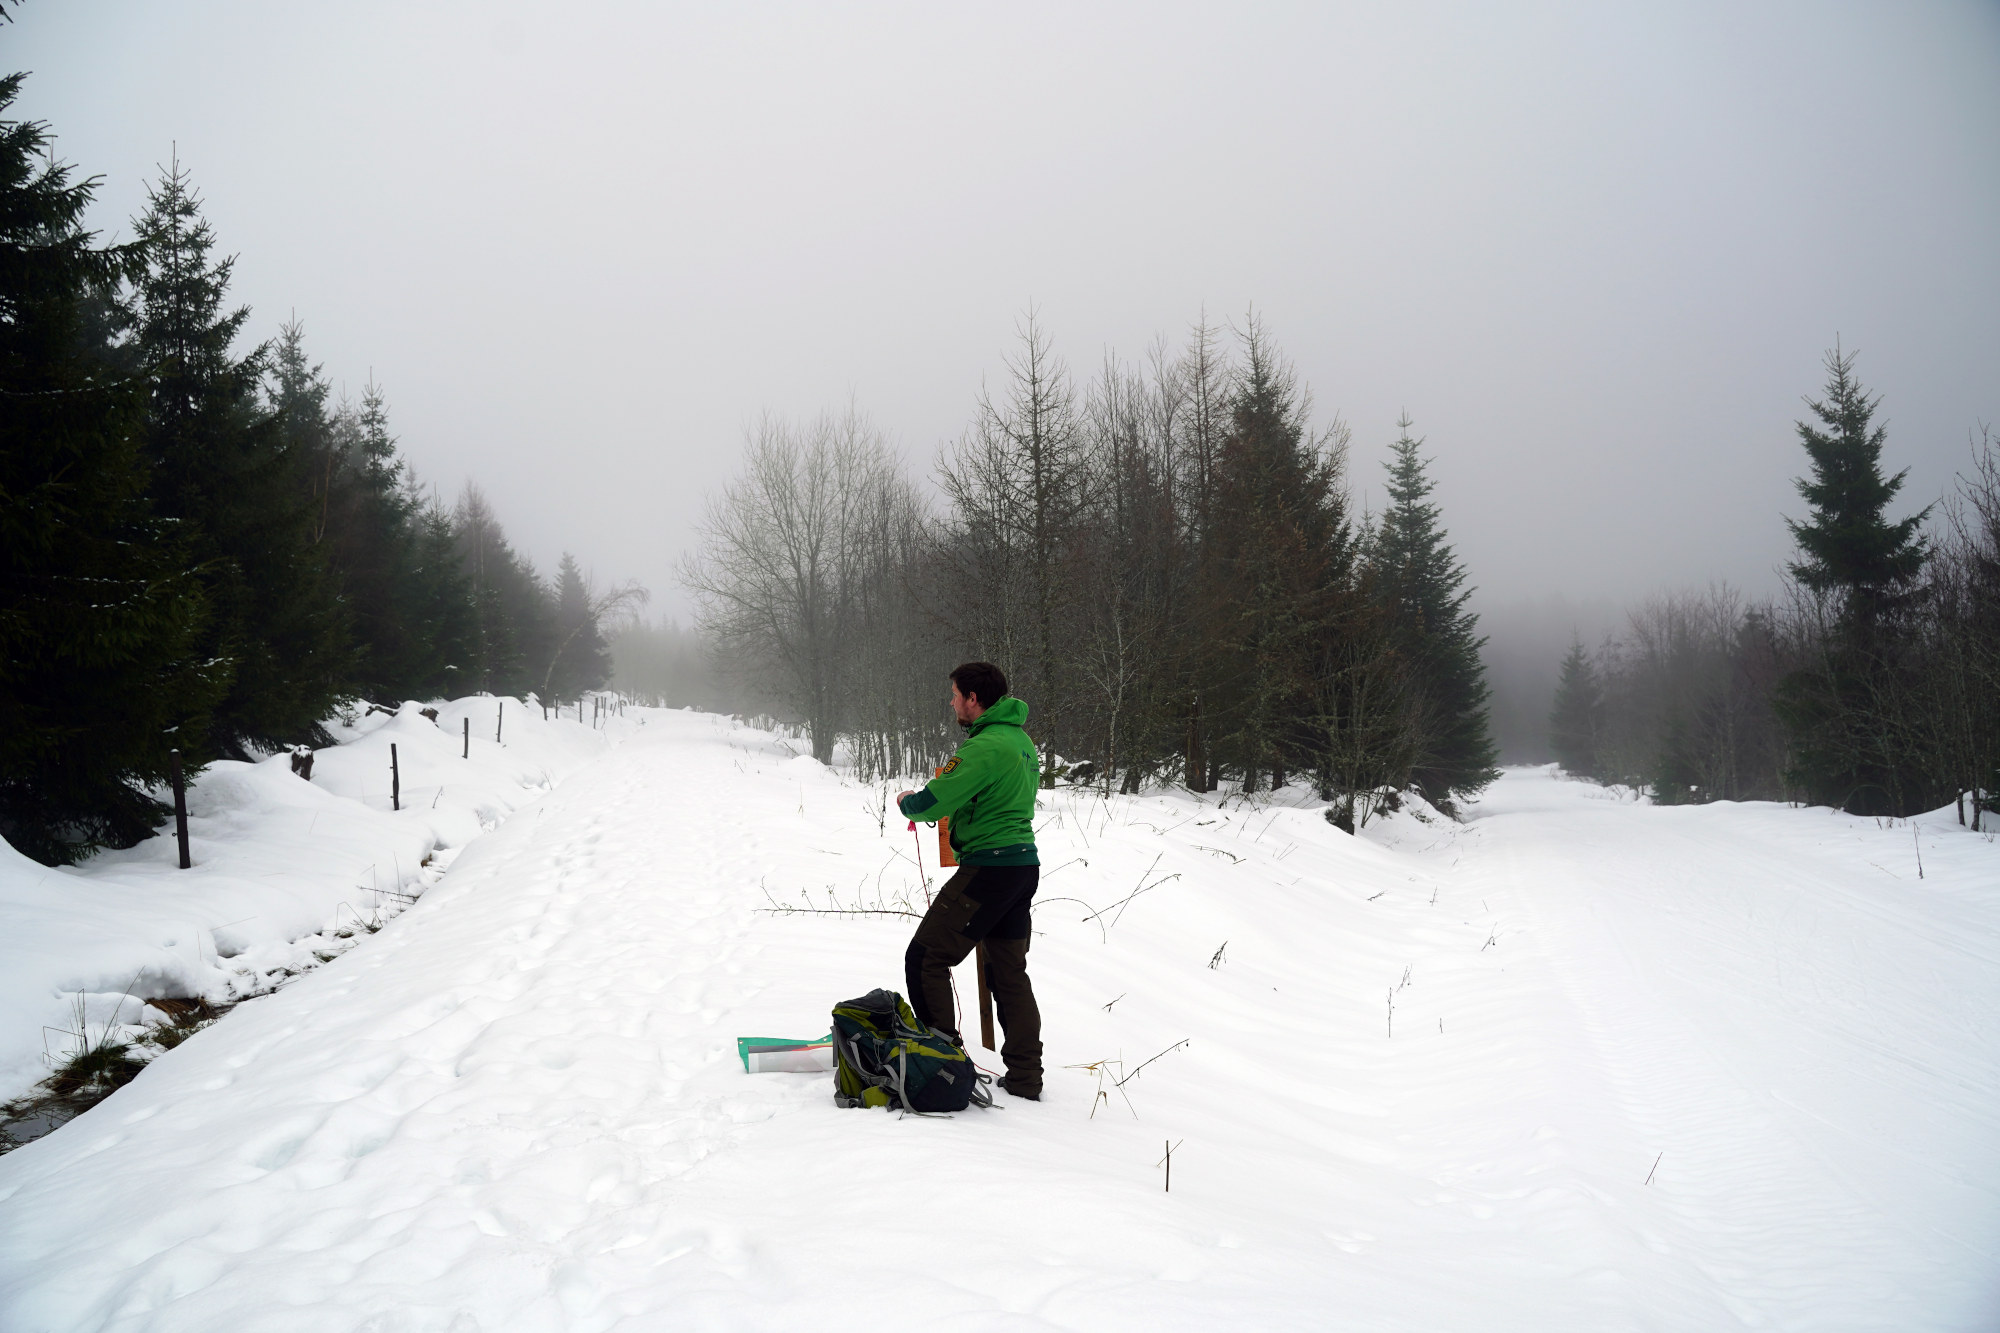 Ein verschneiter Waldweg, am Rand steht ein Ranger in grüner Outdoorjacke und schaut den Weg entlang.